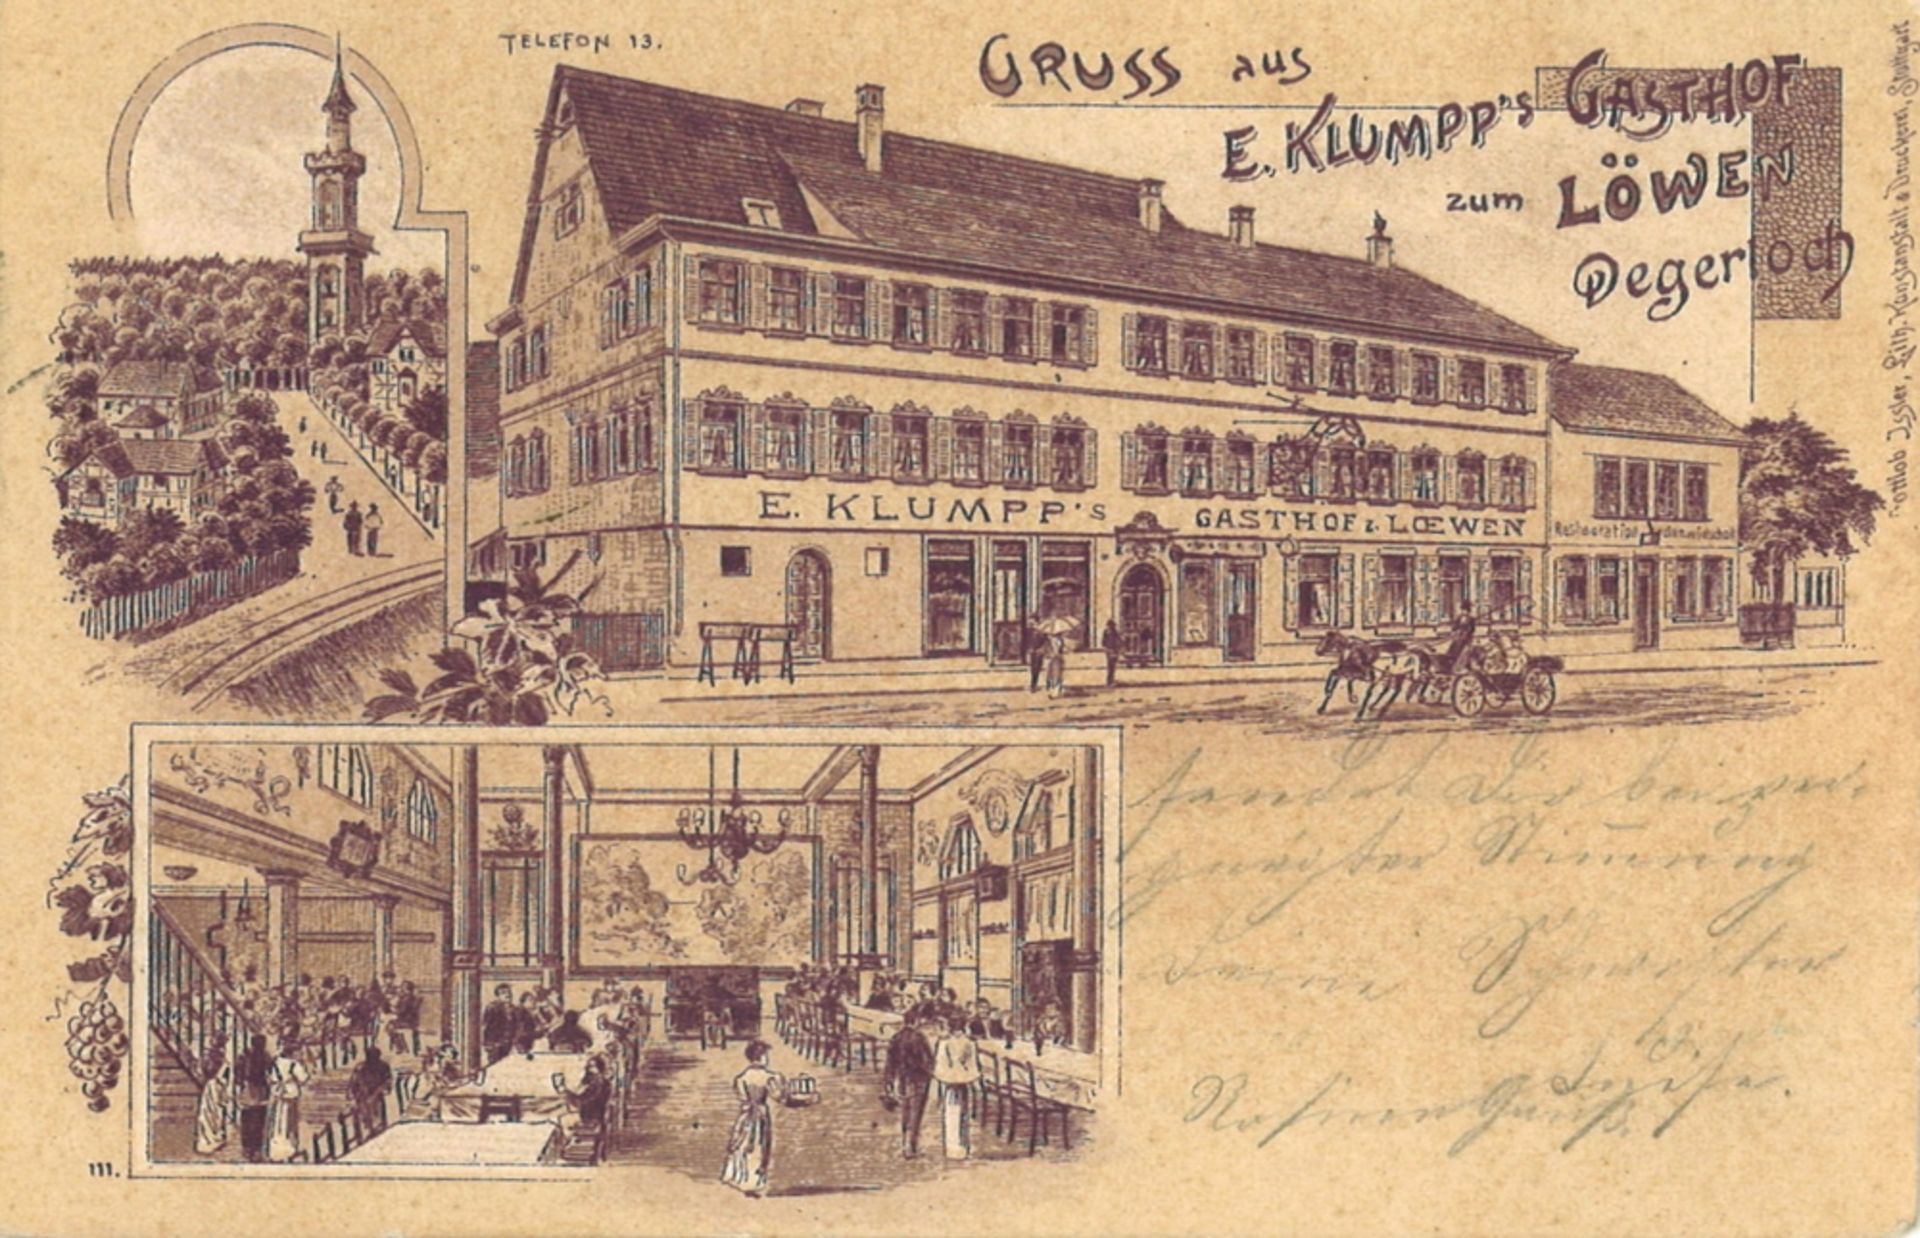 Postkarte "Gruss aus E. Klumpps Gasthof zum Löwen Degerloch", gelaufen